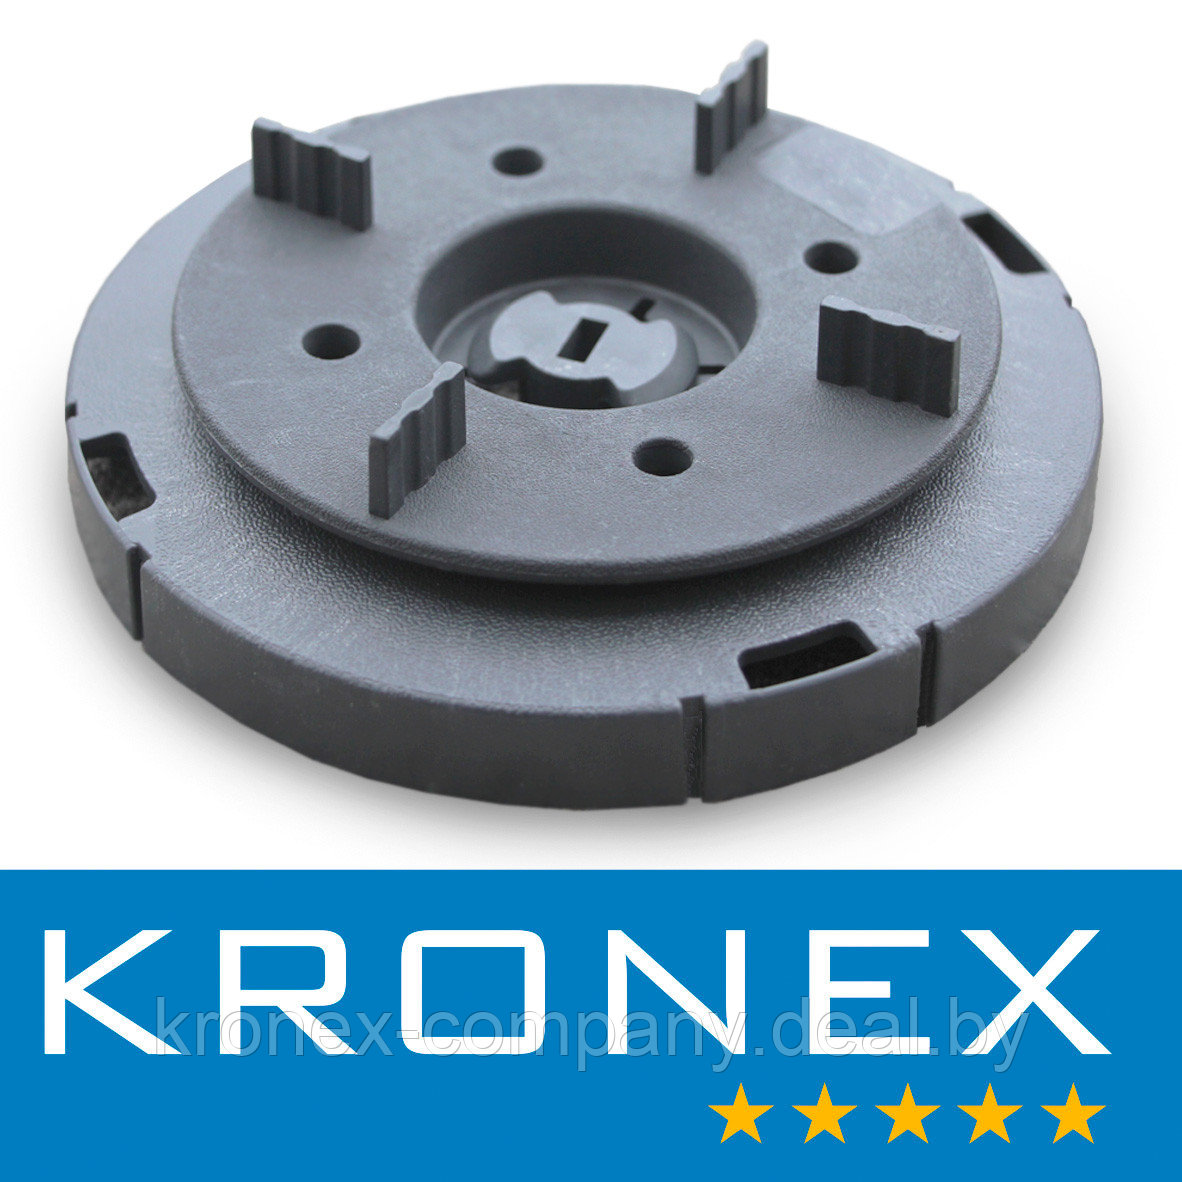 Автоматический регулятор угла наклона до 5,5 градусов KRONEX с табулятором для плитки 4мм